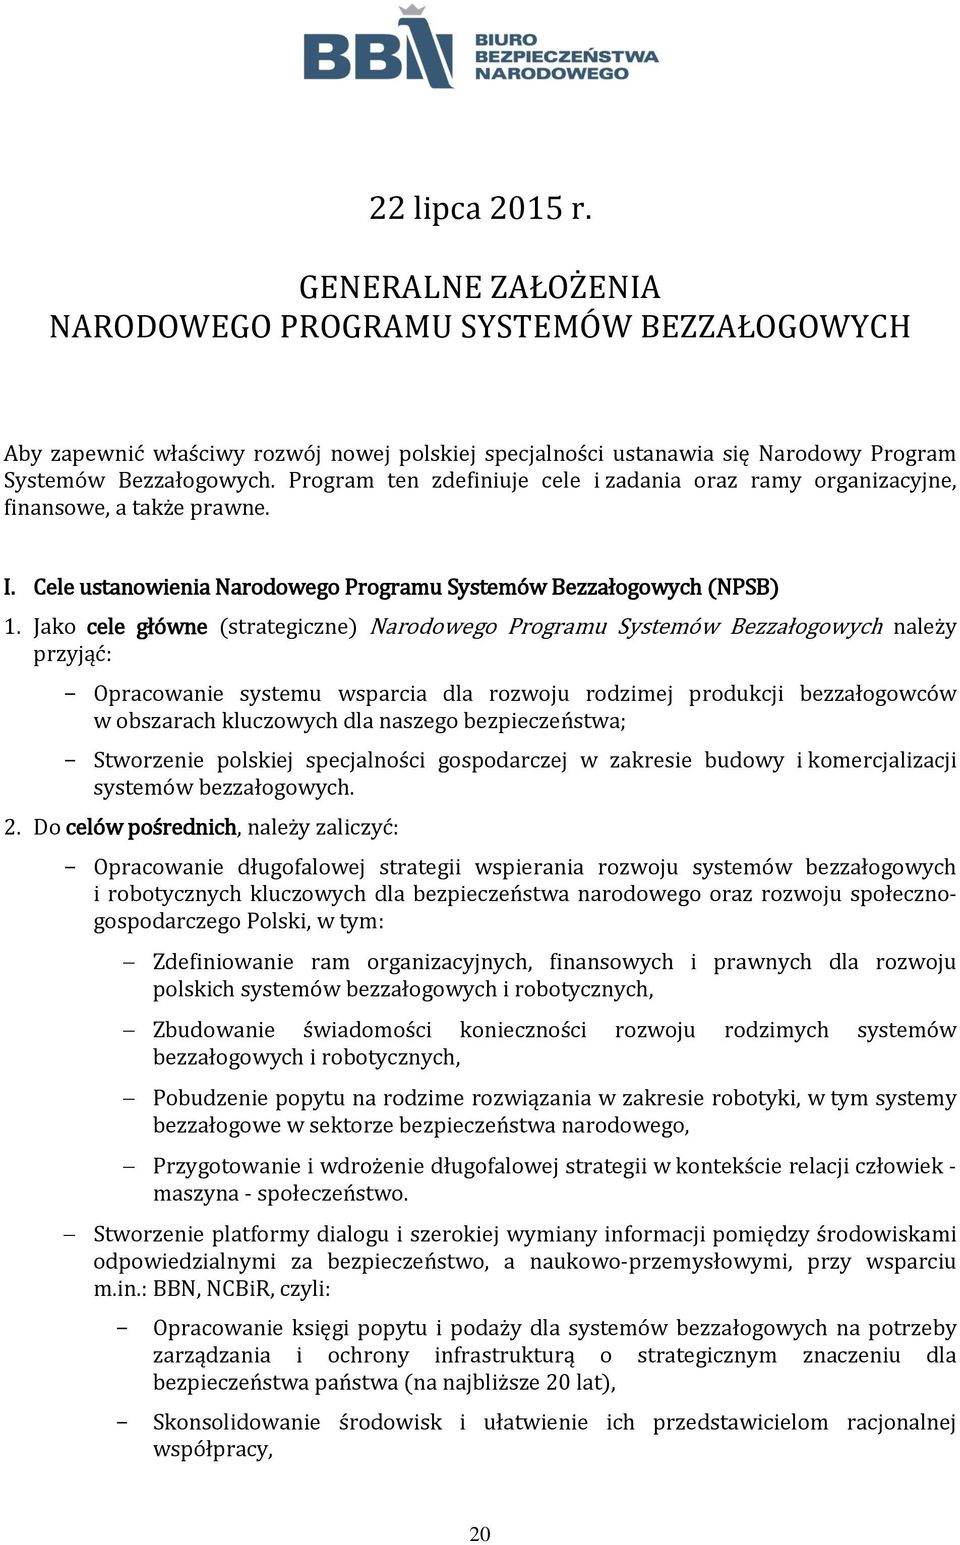 Jako cele główne (strategiczne) Narodowego Programu Systemów Bezzałogowych należy przyjąć: Opracowanie systemu wsparcia dla rozwoju rodzimej produkcji bezzałogowców w obszarach kluczowych dla naszego